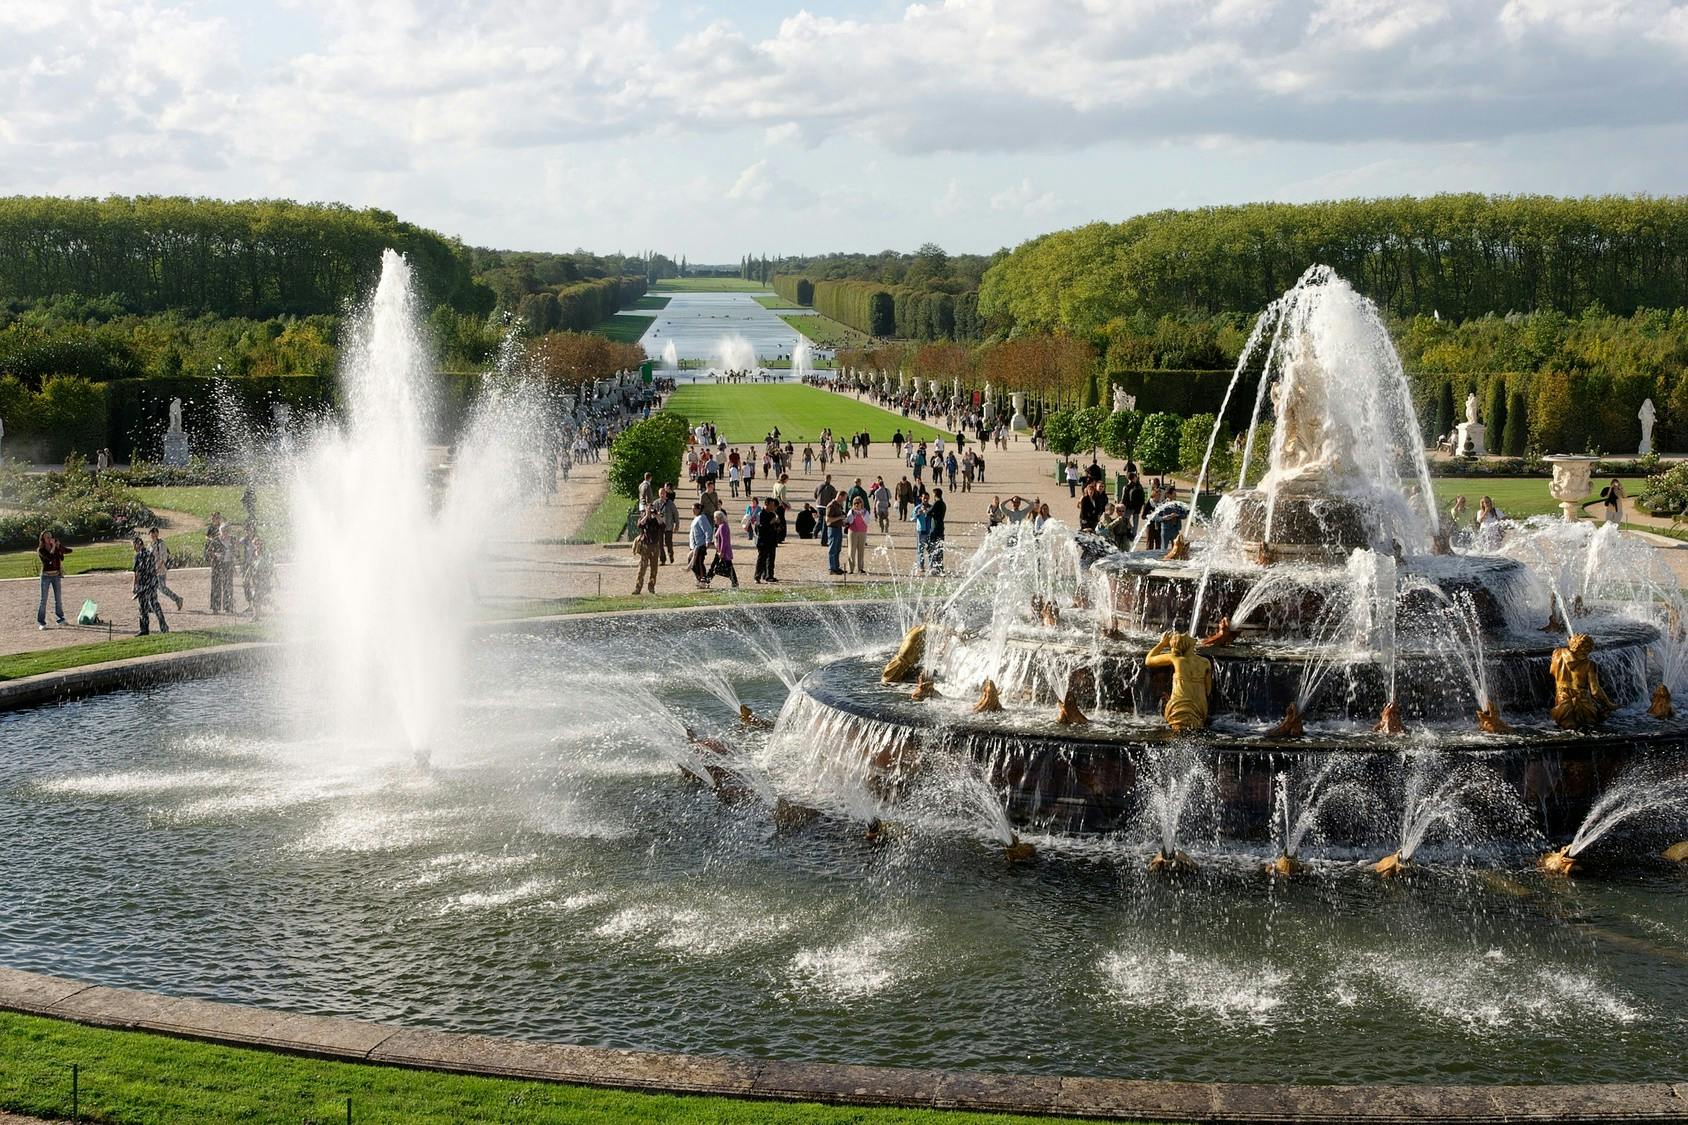 Versailles fountain